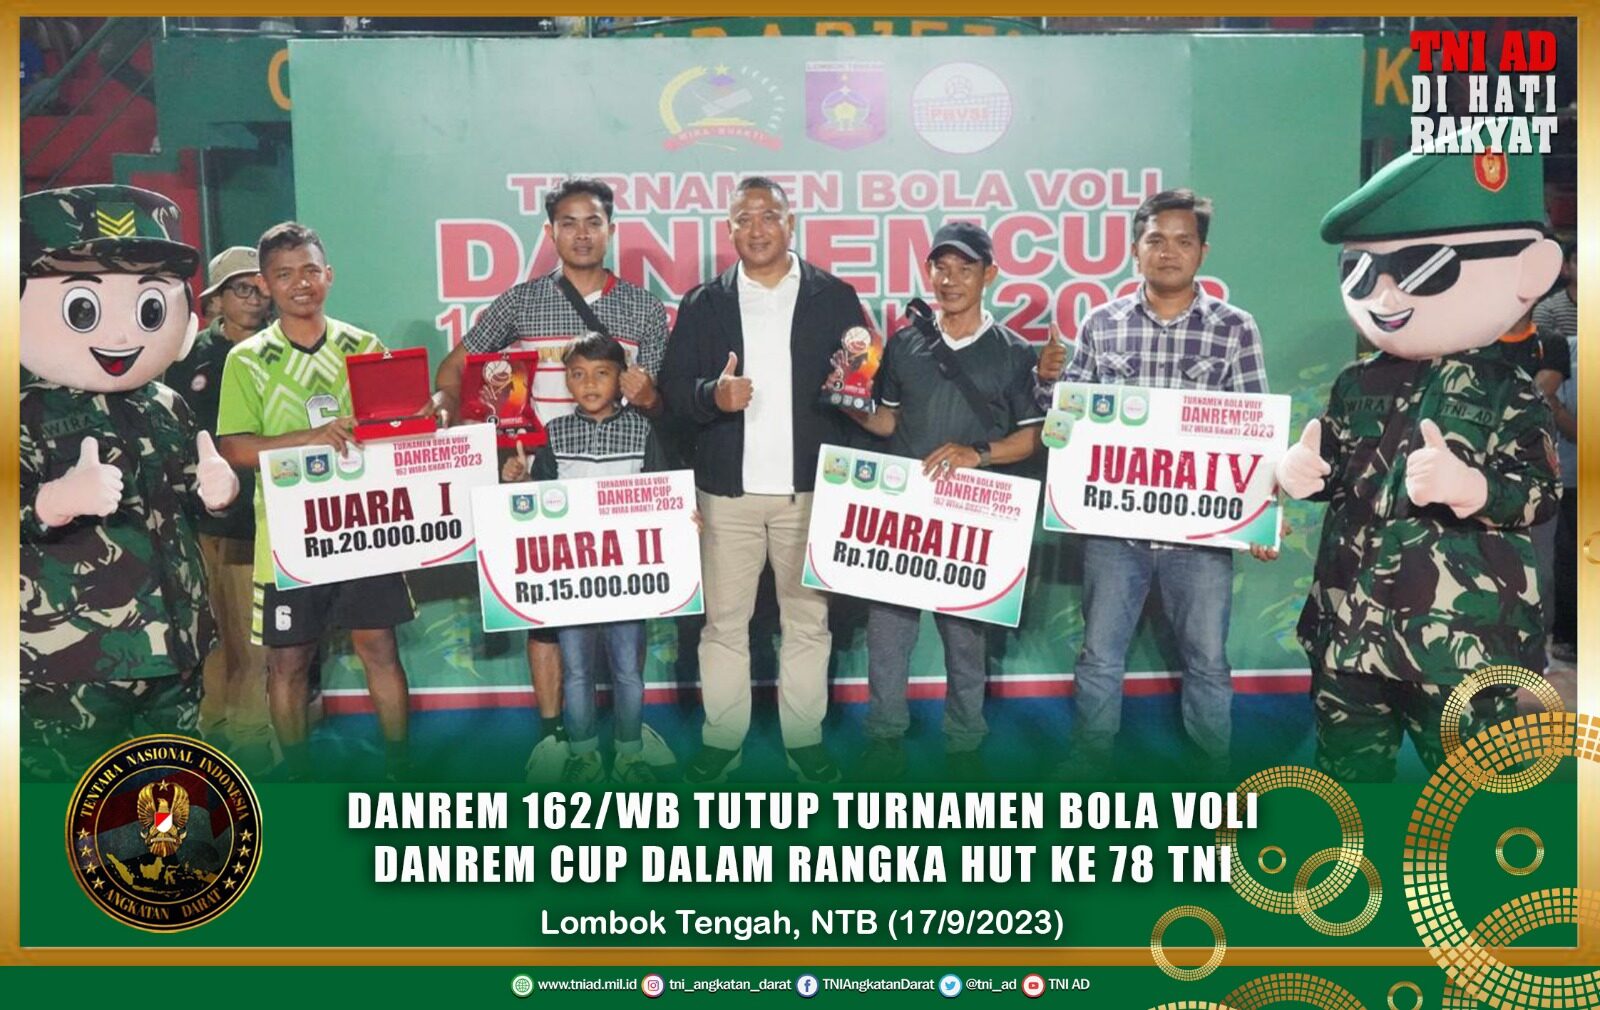 Danrem 162/WB Tutup Turnamen Bola Voli Danrem Cup Dalam Rangka HUT ke 78 TNI